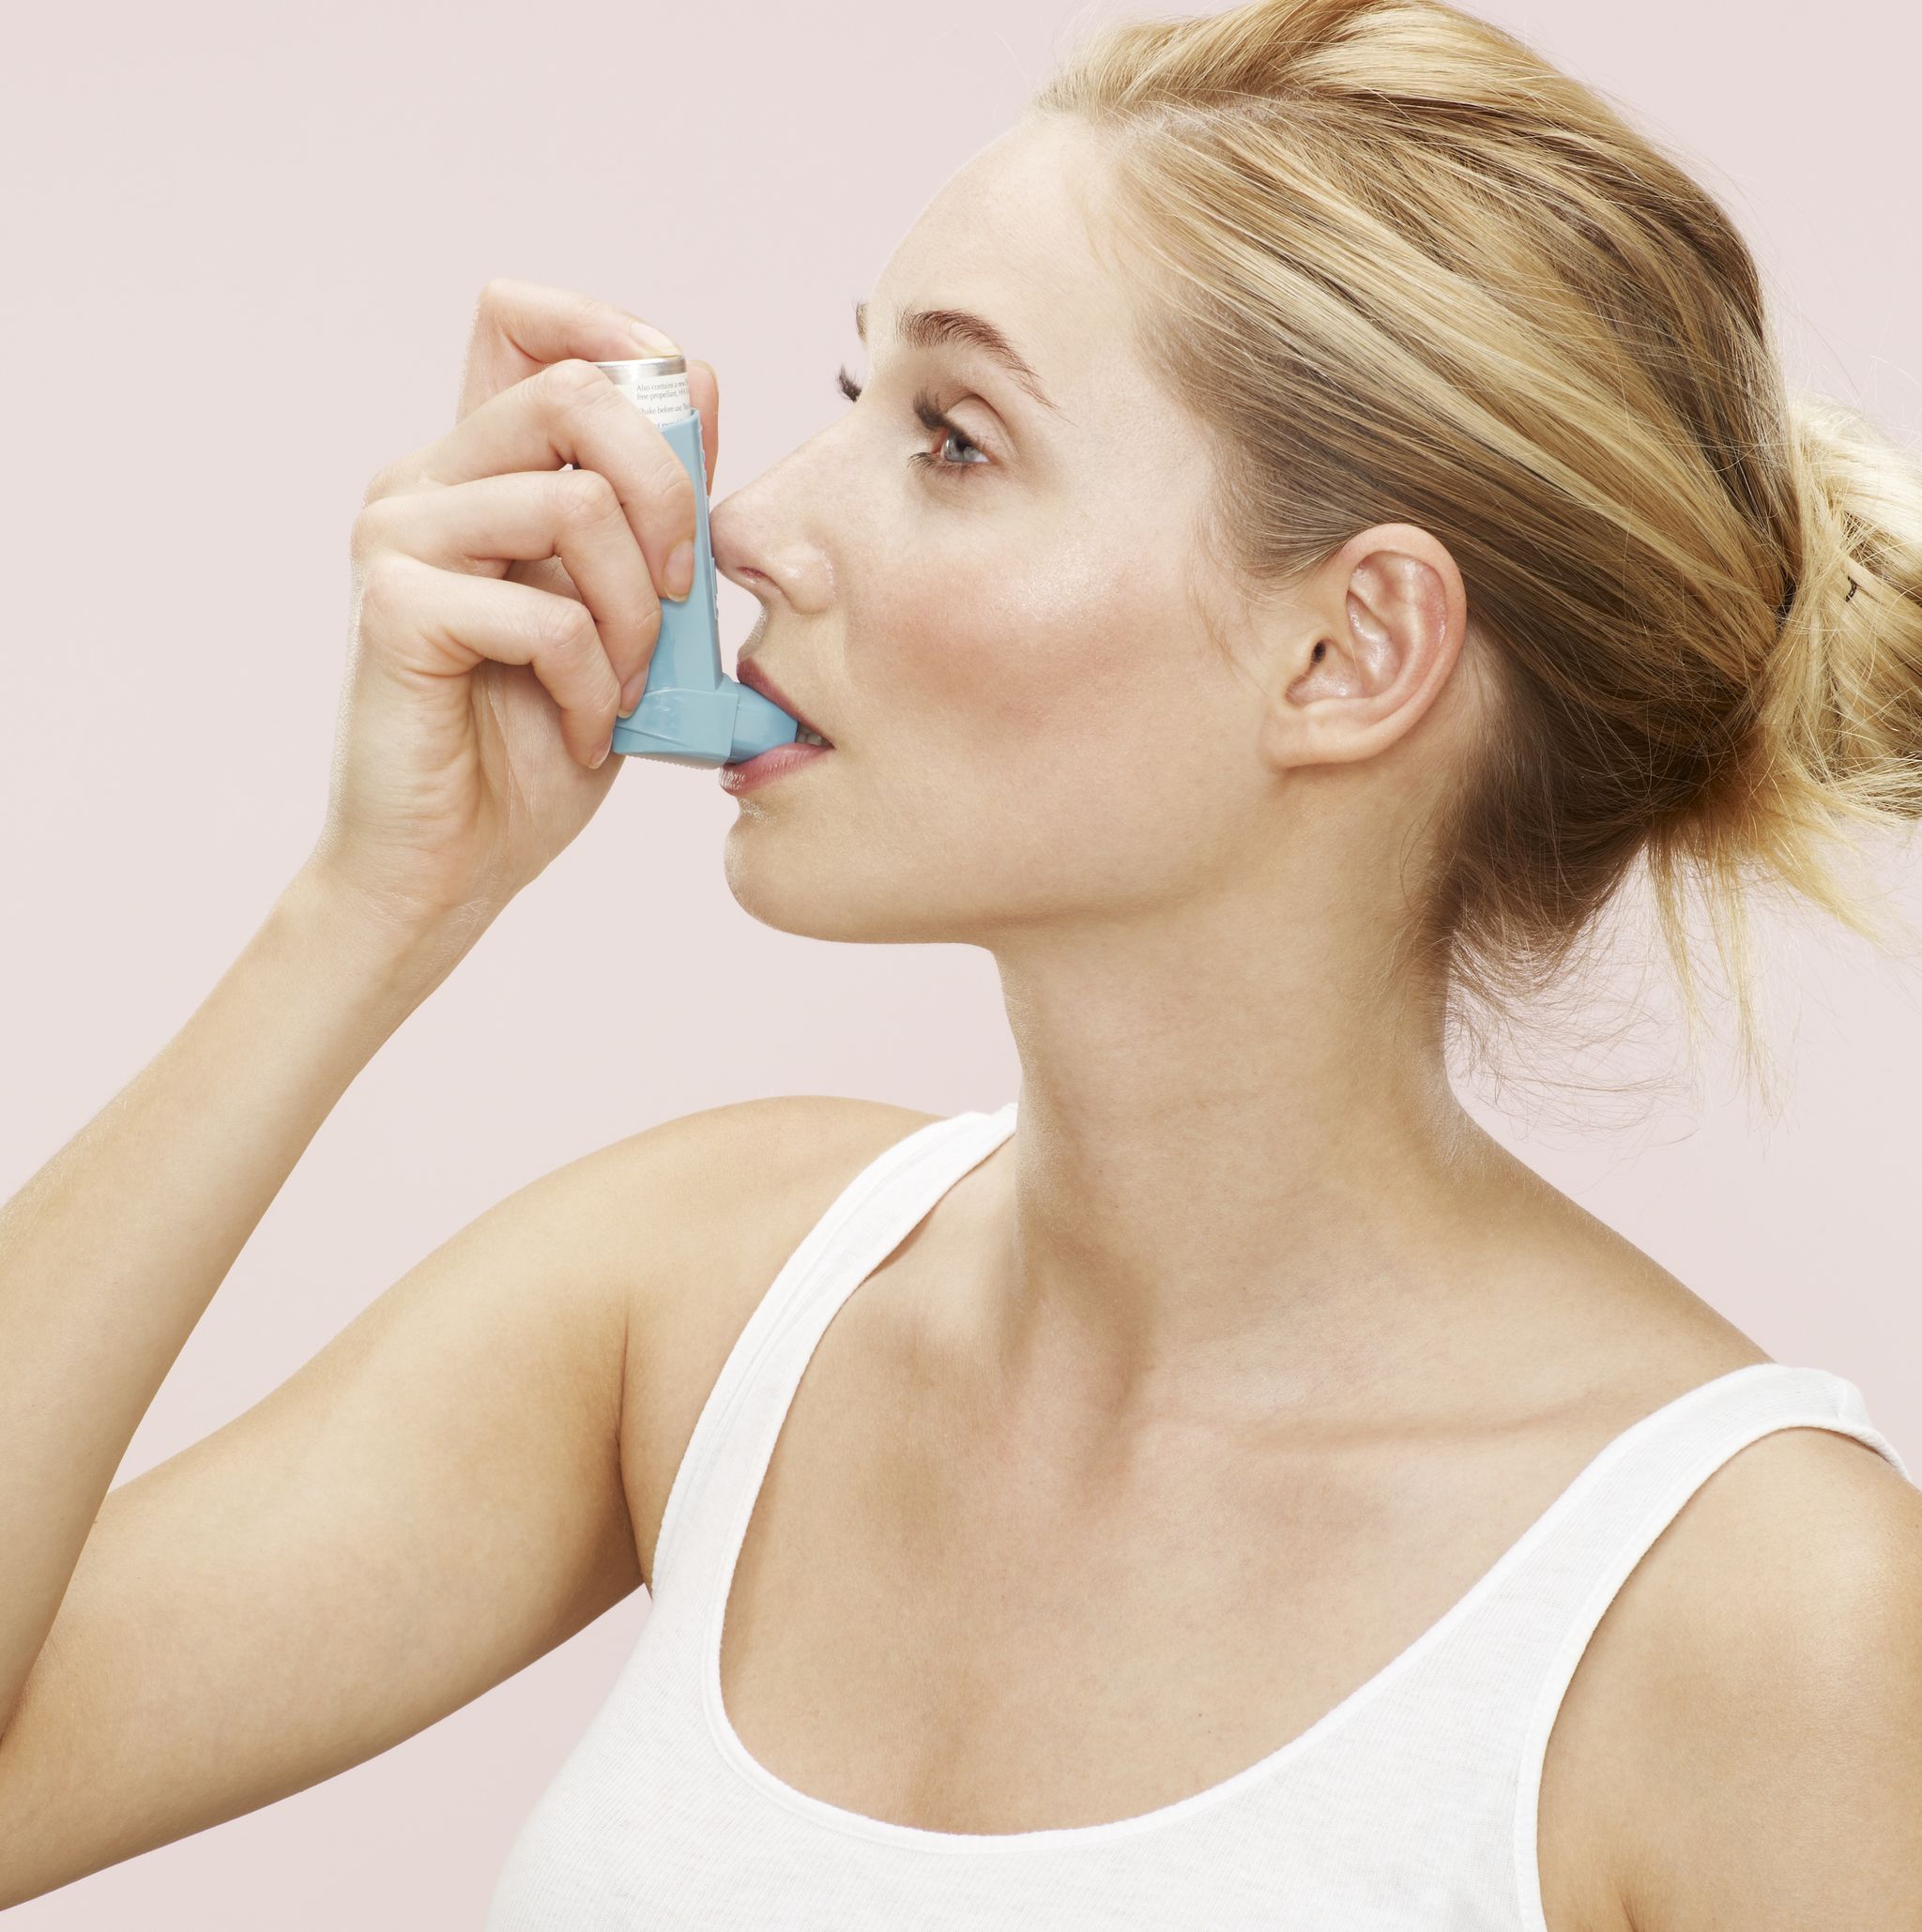 woman using blue inhaler